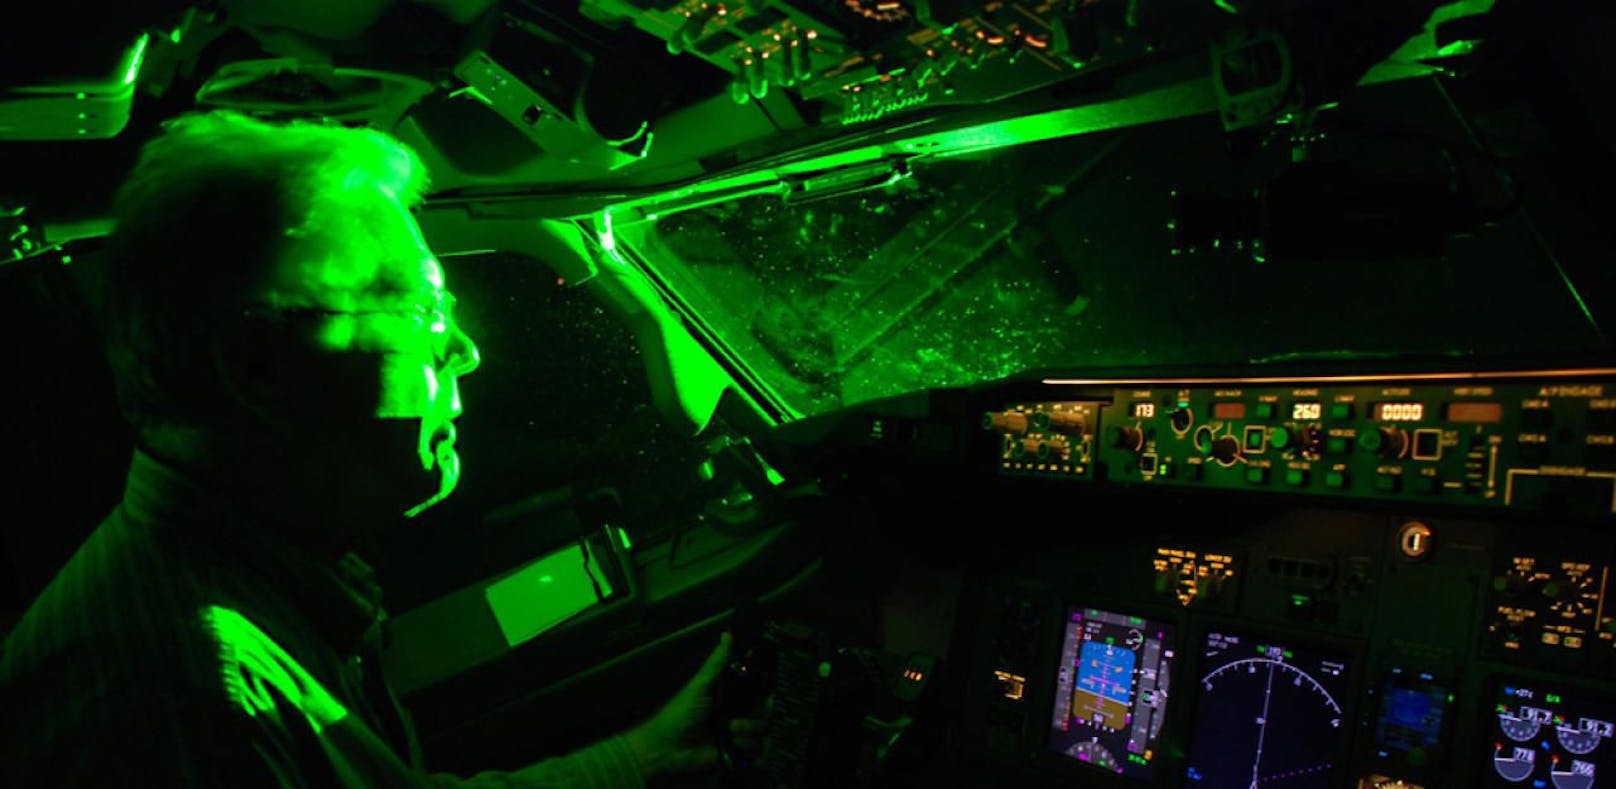 Laserpointer-Attacke auf einen Piloten: So gefährlich ist die Attacke.(Foto der US-Luftfahrtbehörde - Symbolbild)